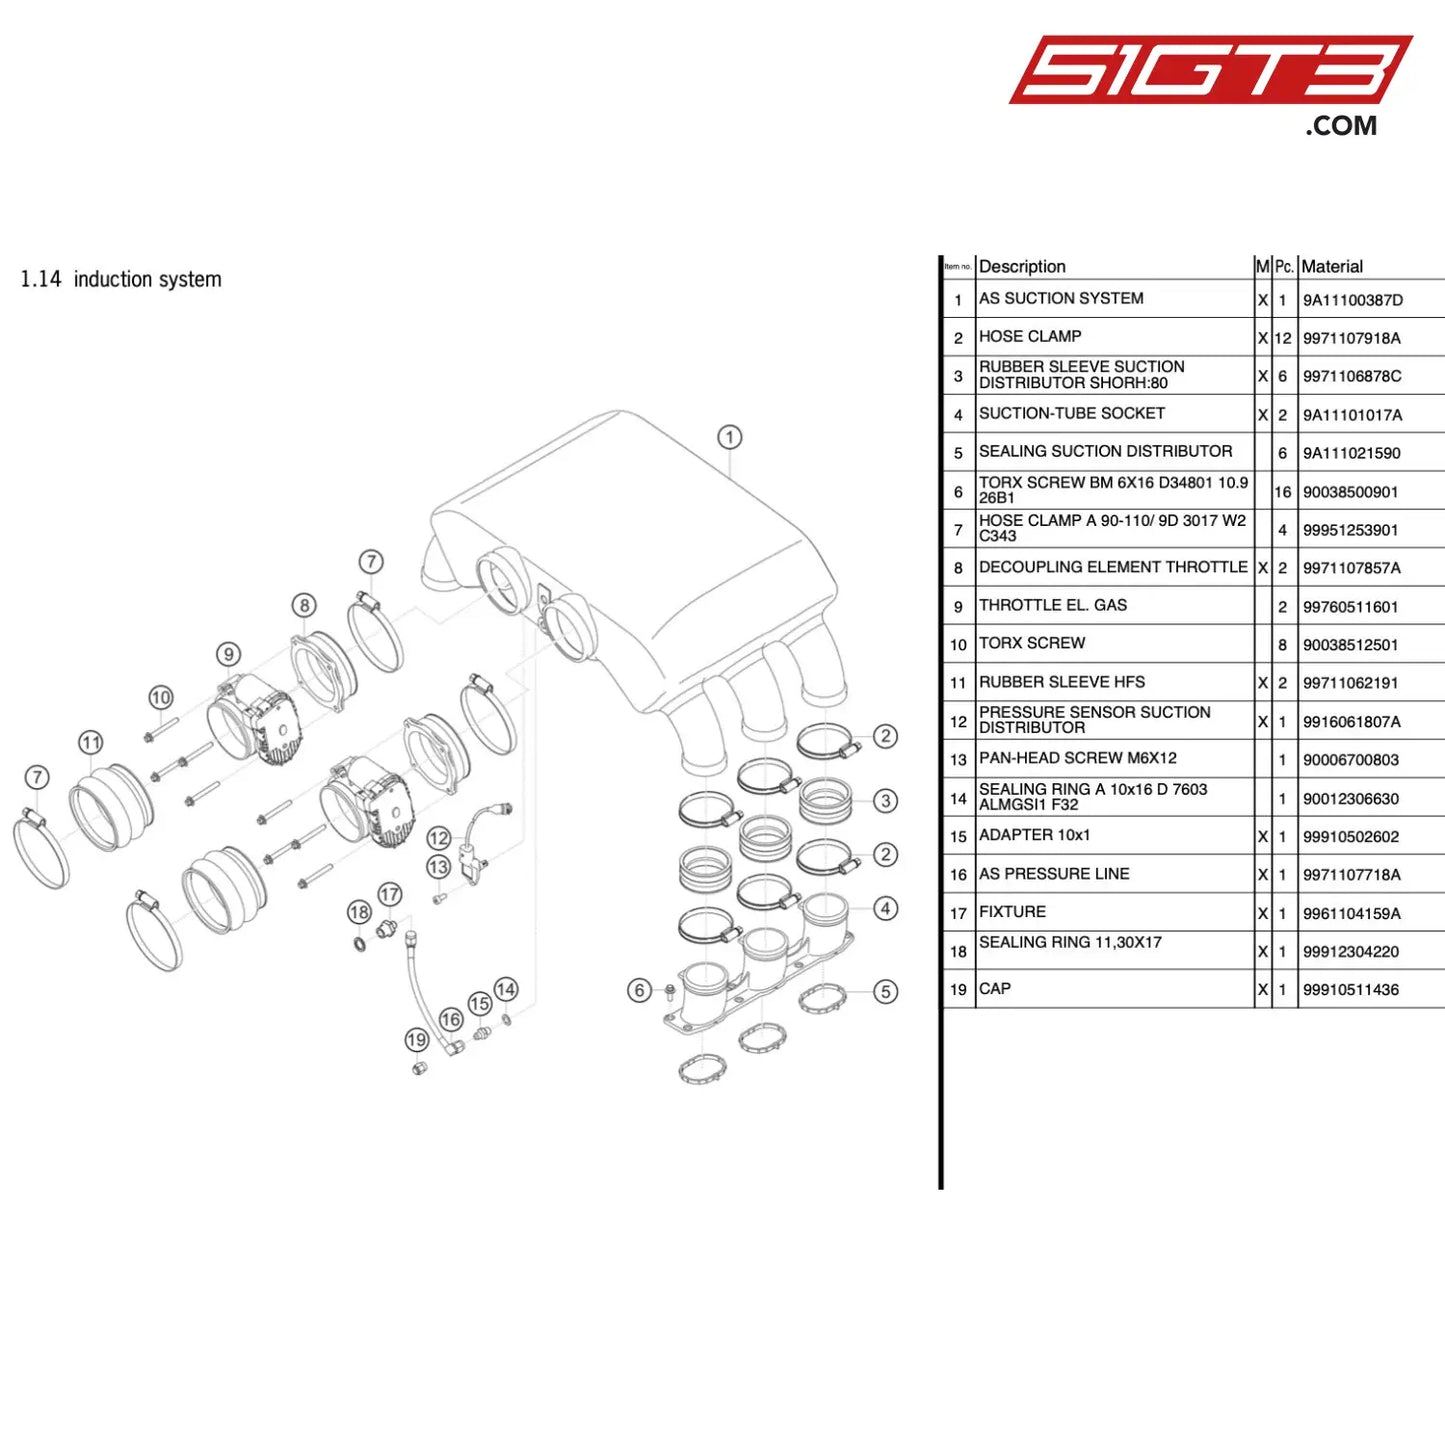 Throttle El. Gas - 99760511601 [Porsche 911 Gt3 R Type 991 (Gen 1)] Induction System